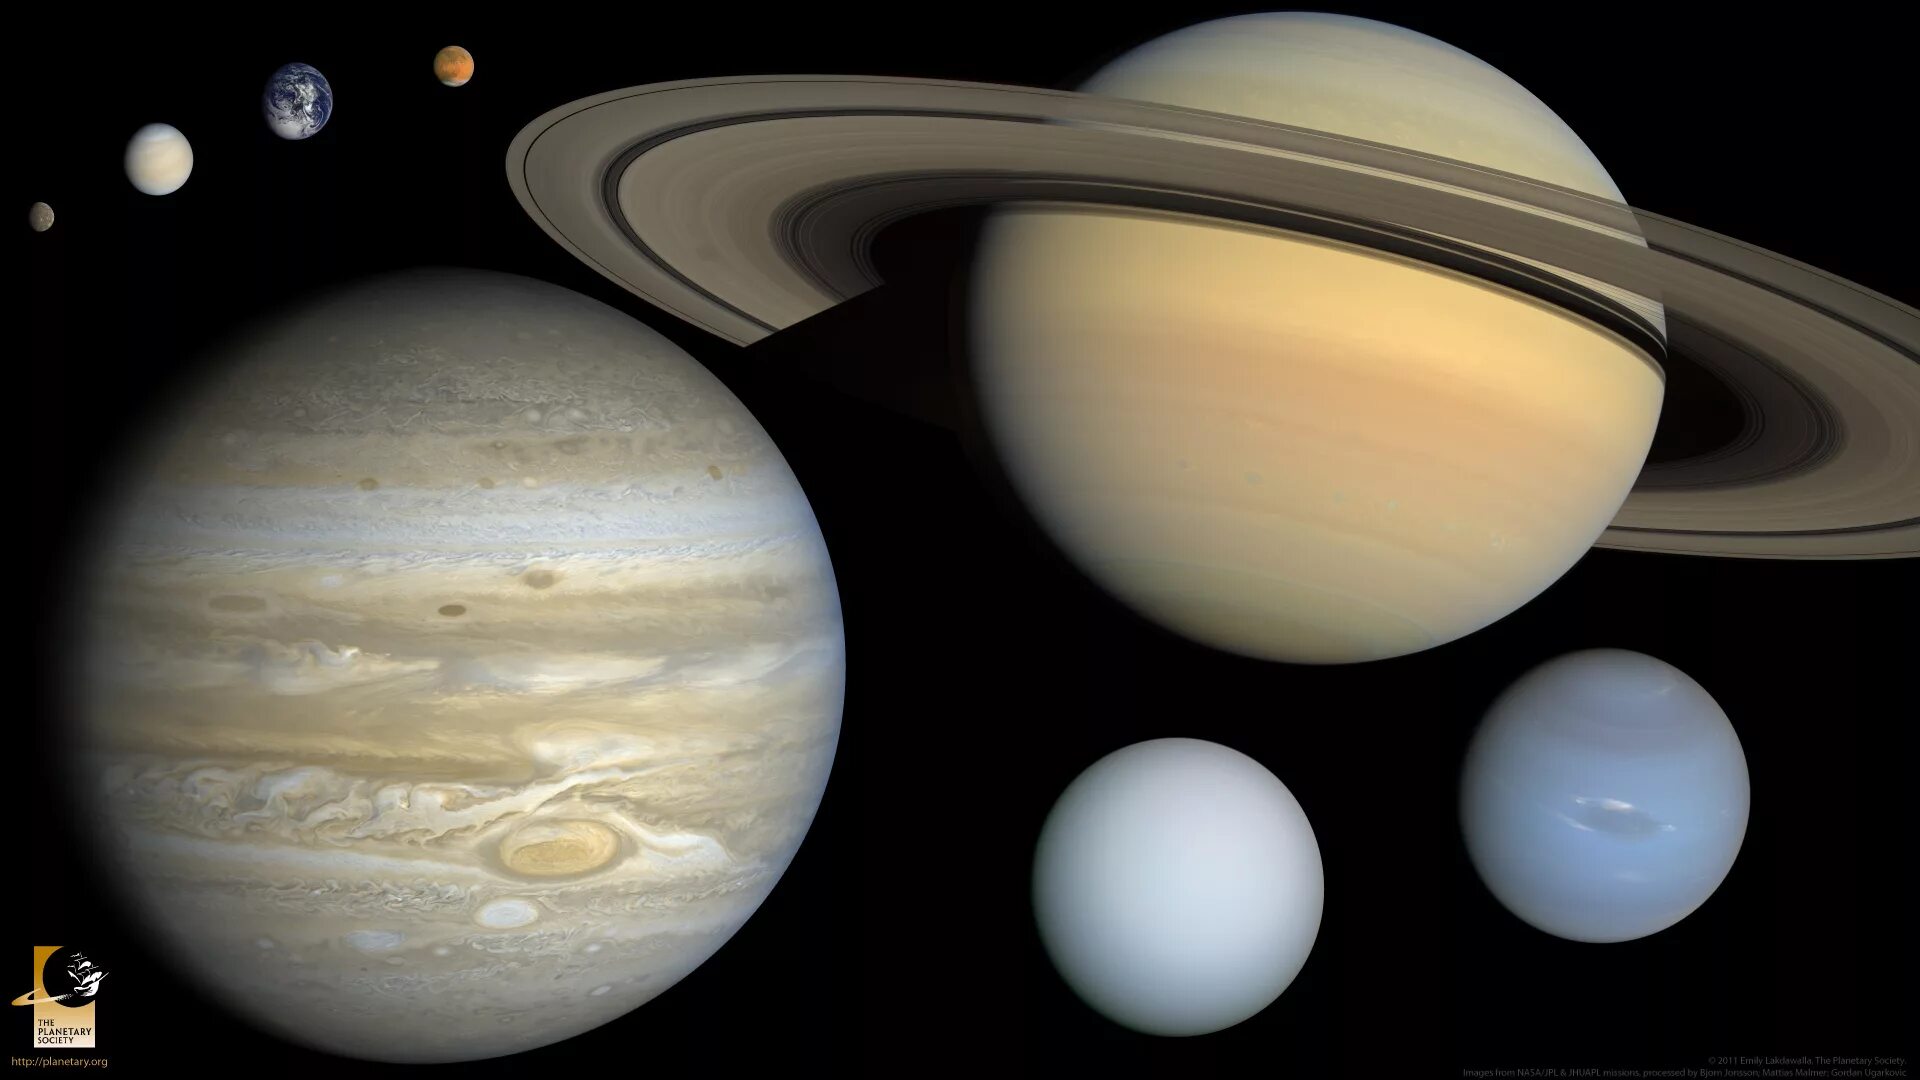 Сколько планет гигантов в солнечной системе. Планеты гиганты и планеты карлики. Спутники Юпитера Сатурна урана Нептуна. Планеты гиганты и карлики в солнечной системе. Планеты гиганты Юпитер Сатурн Уран Нептун.